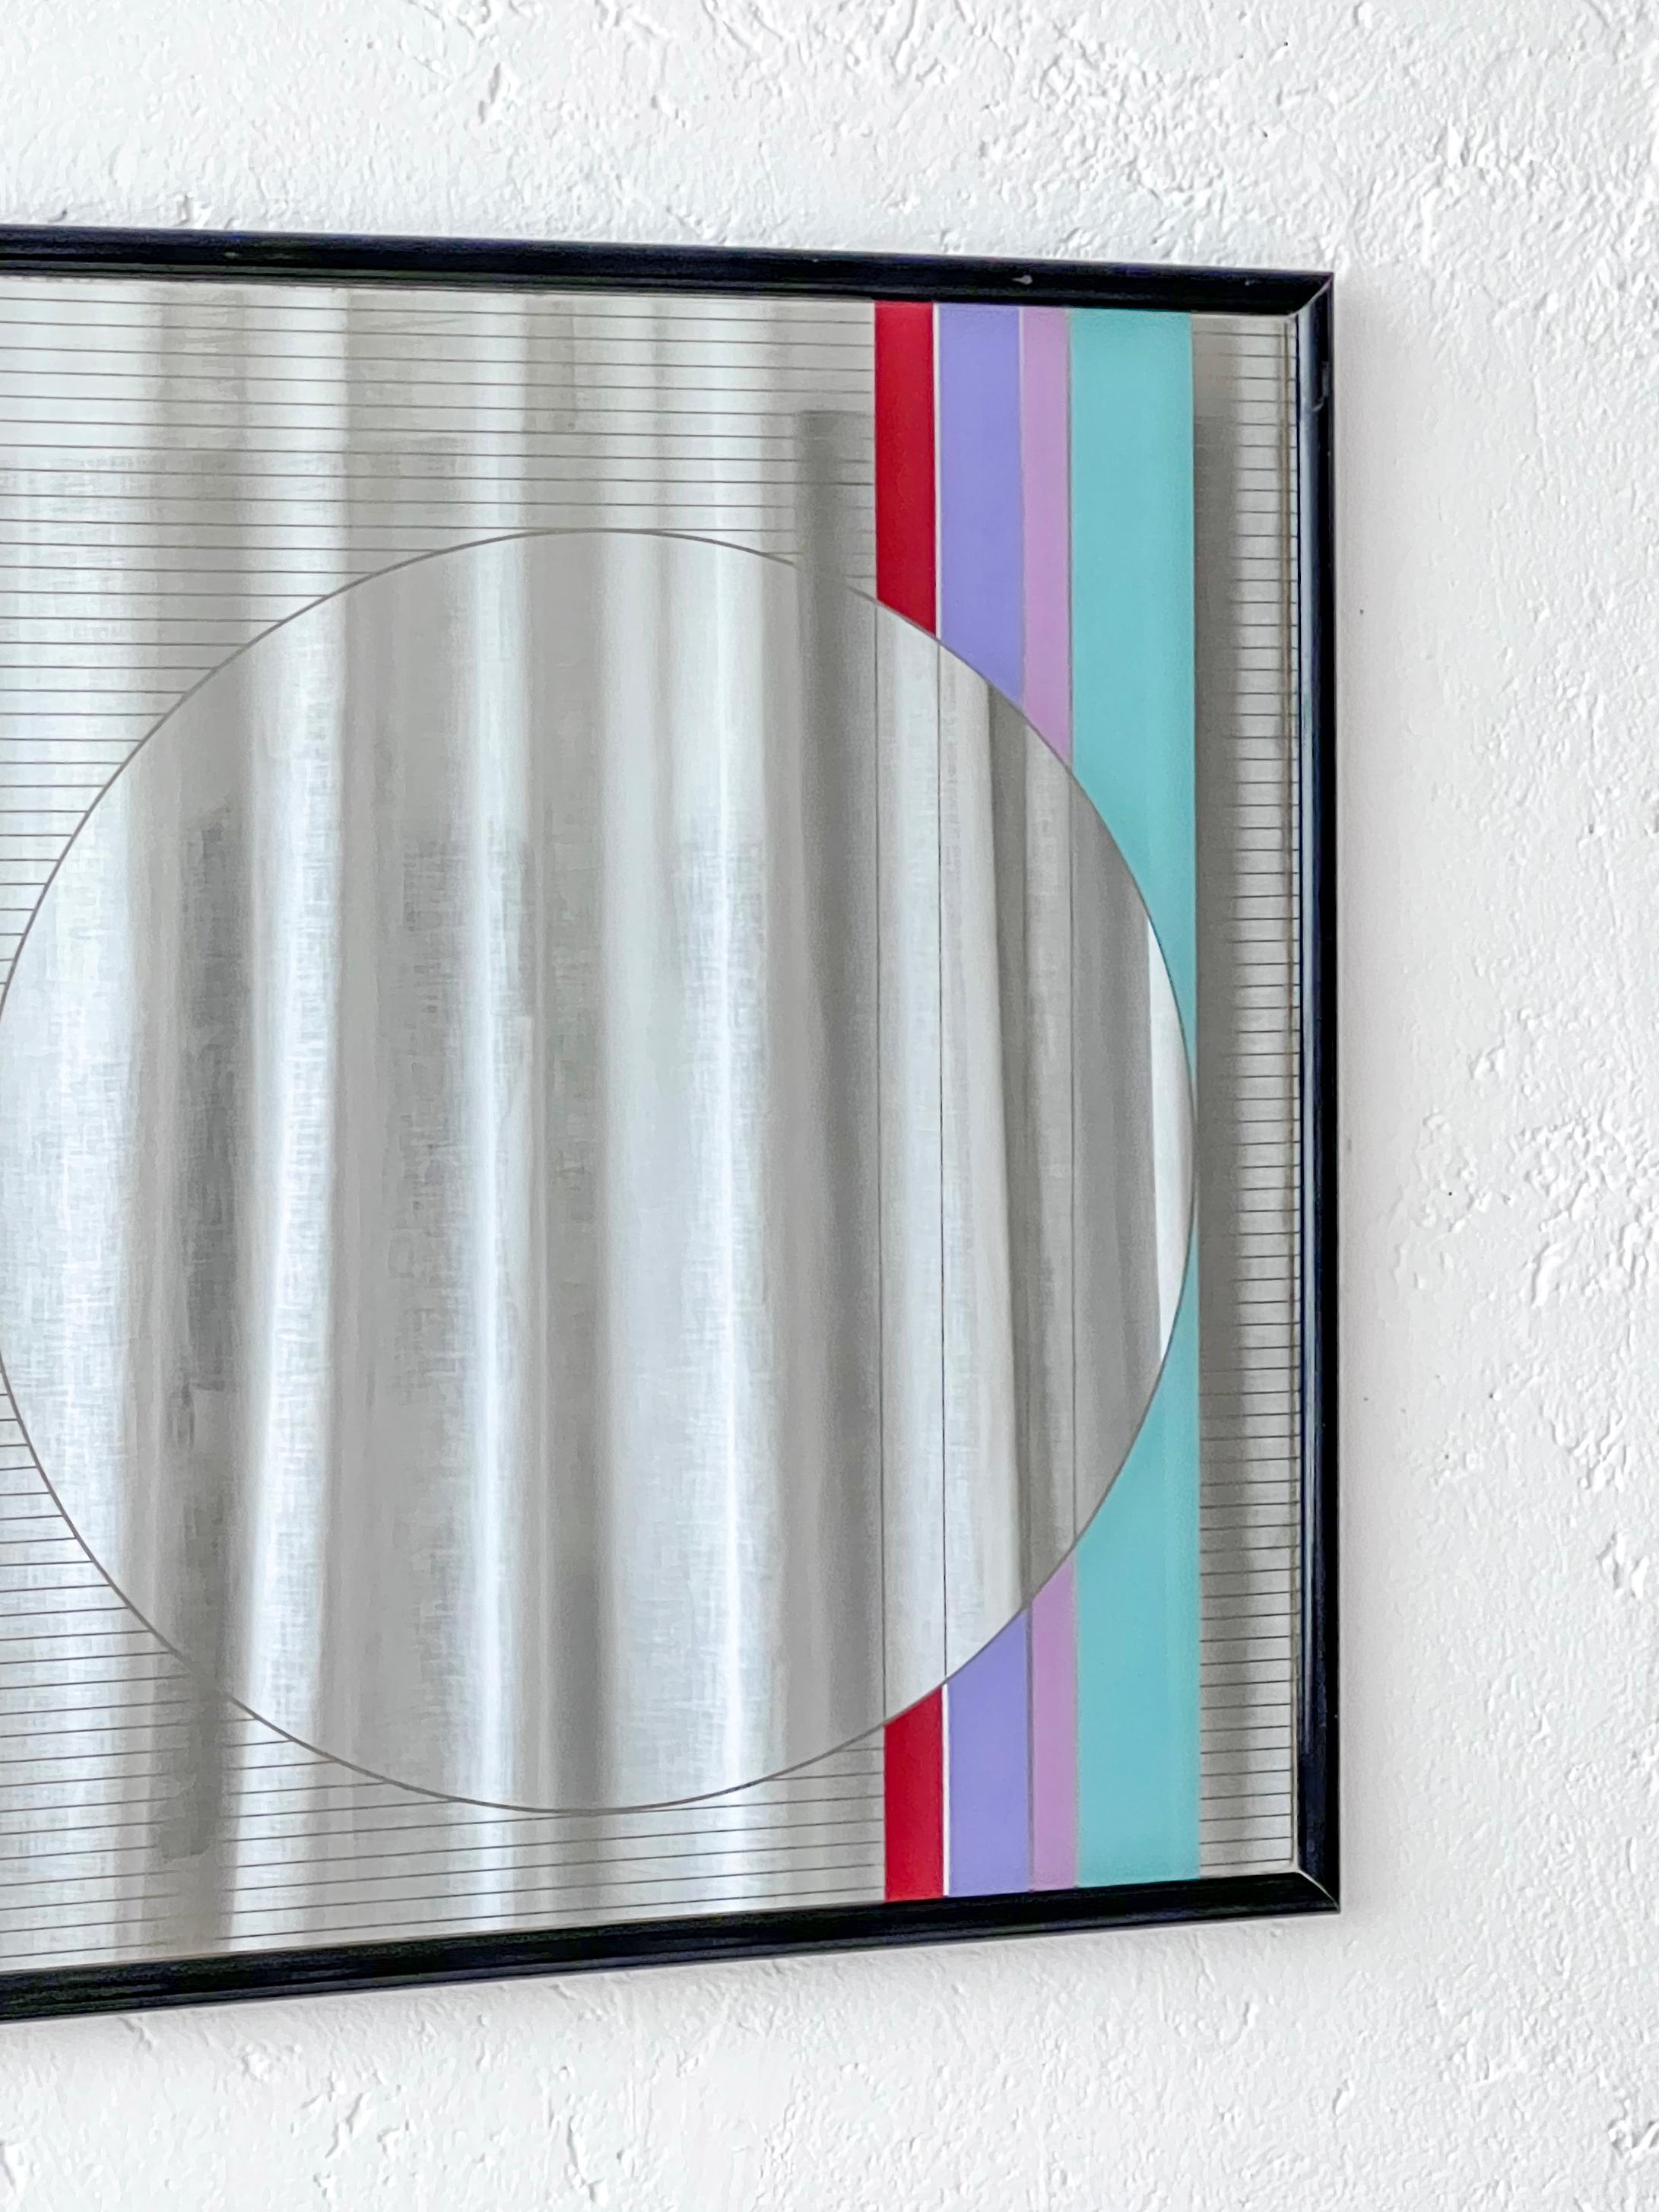 Miroir mural géométrique décoratif de l'artiste italien Eugenio Carmie pour la marque de mobilier Acerbis. Conçu dans les années 1980 et baptisé 